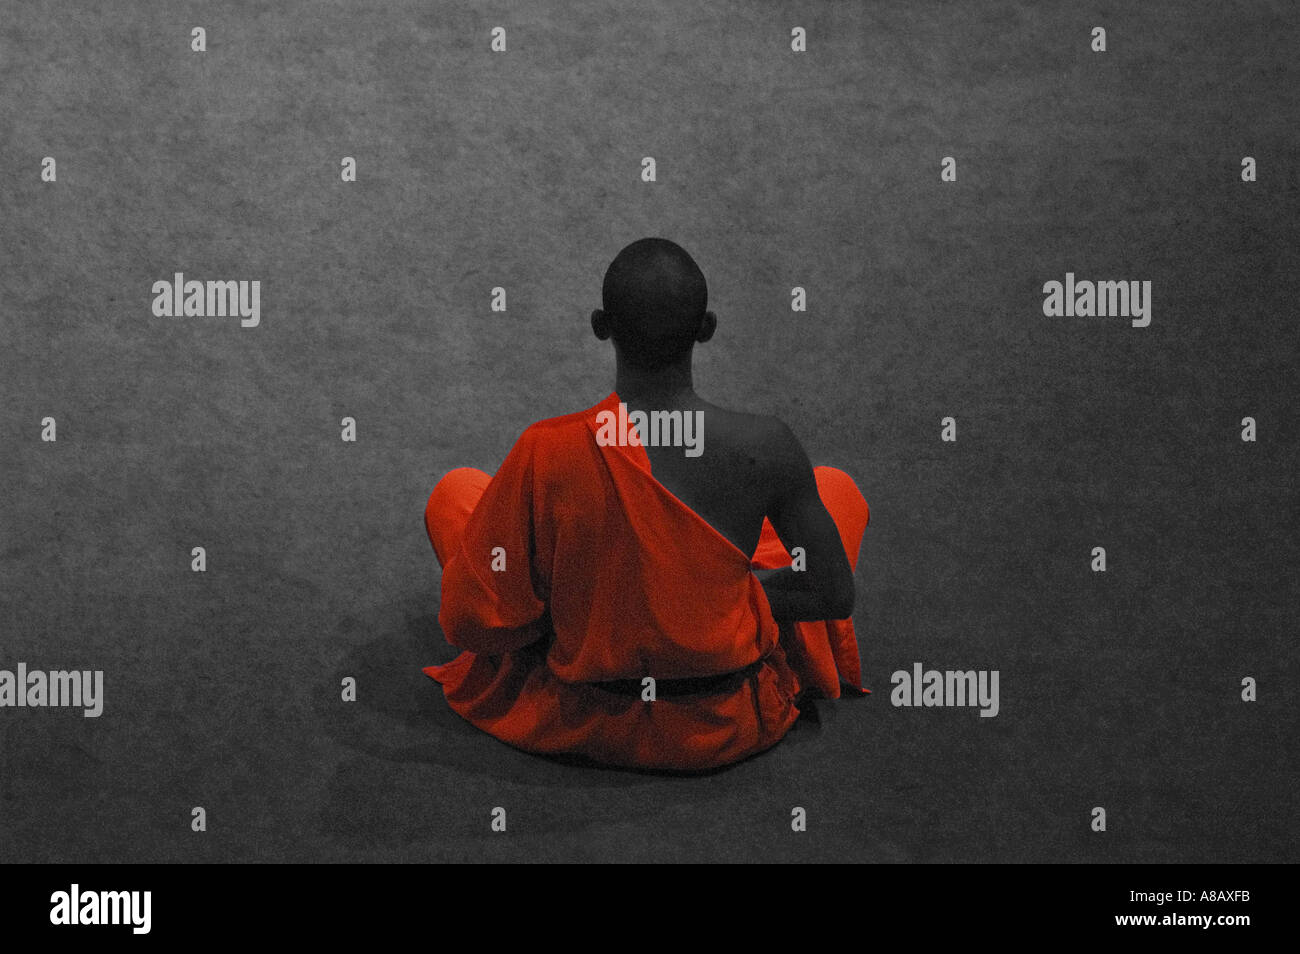 Monochromes Bild der buddhistische Mönch sitzen in der Meditation mit seiner orangefarbenen Robe gezielt hervorgehoben Stockfoto